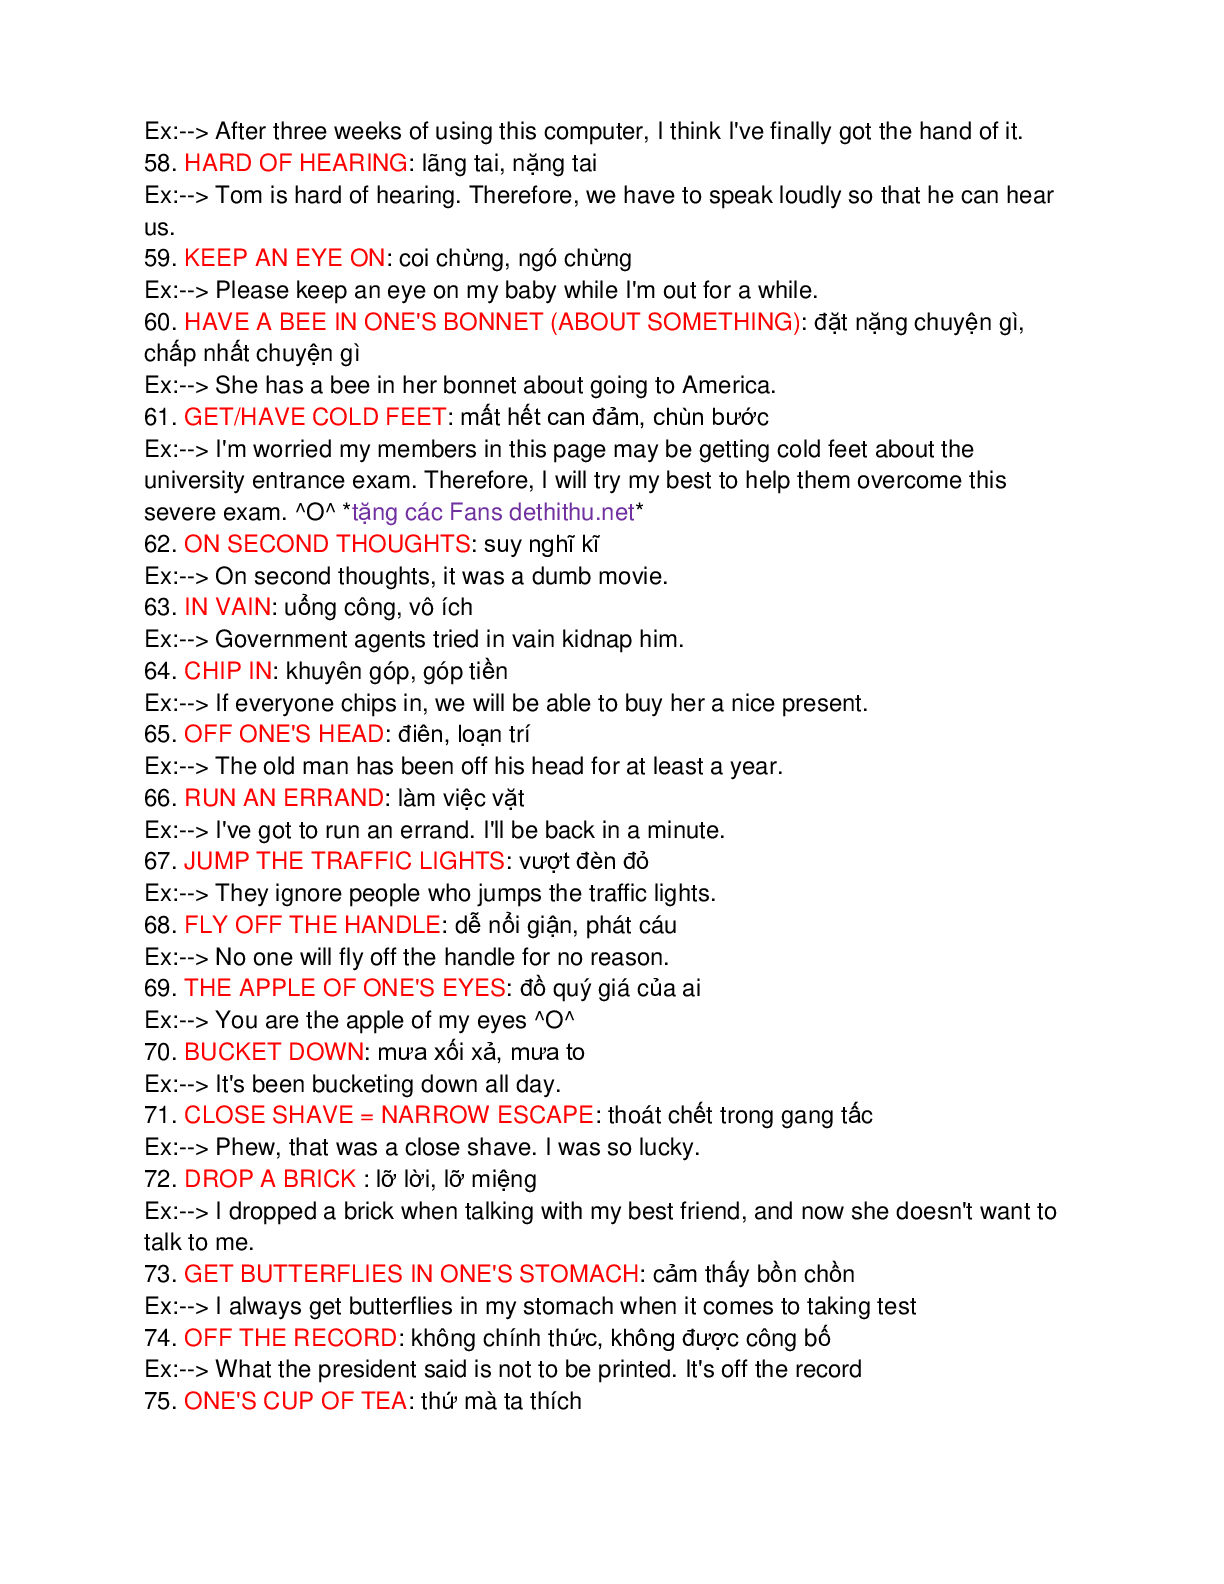 100 idioms quan trọng thường gặp trong đề thi đại học môn Tiếng Anh (trang 5)